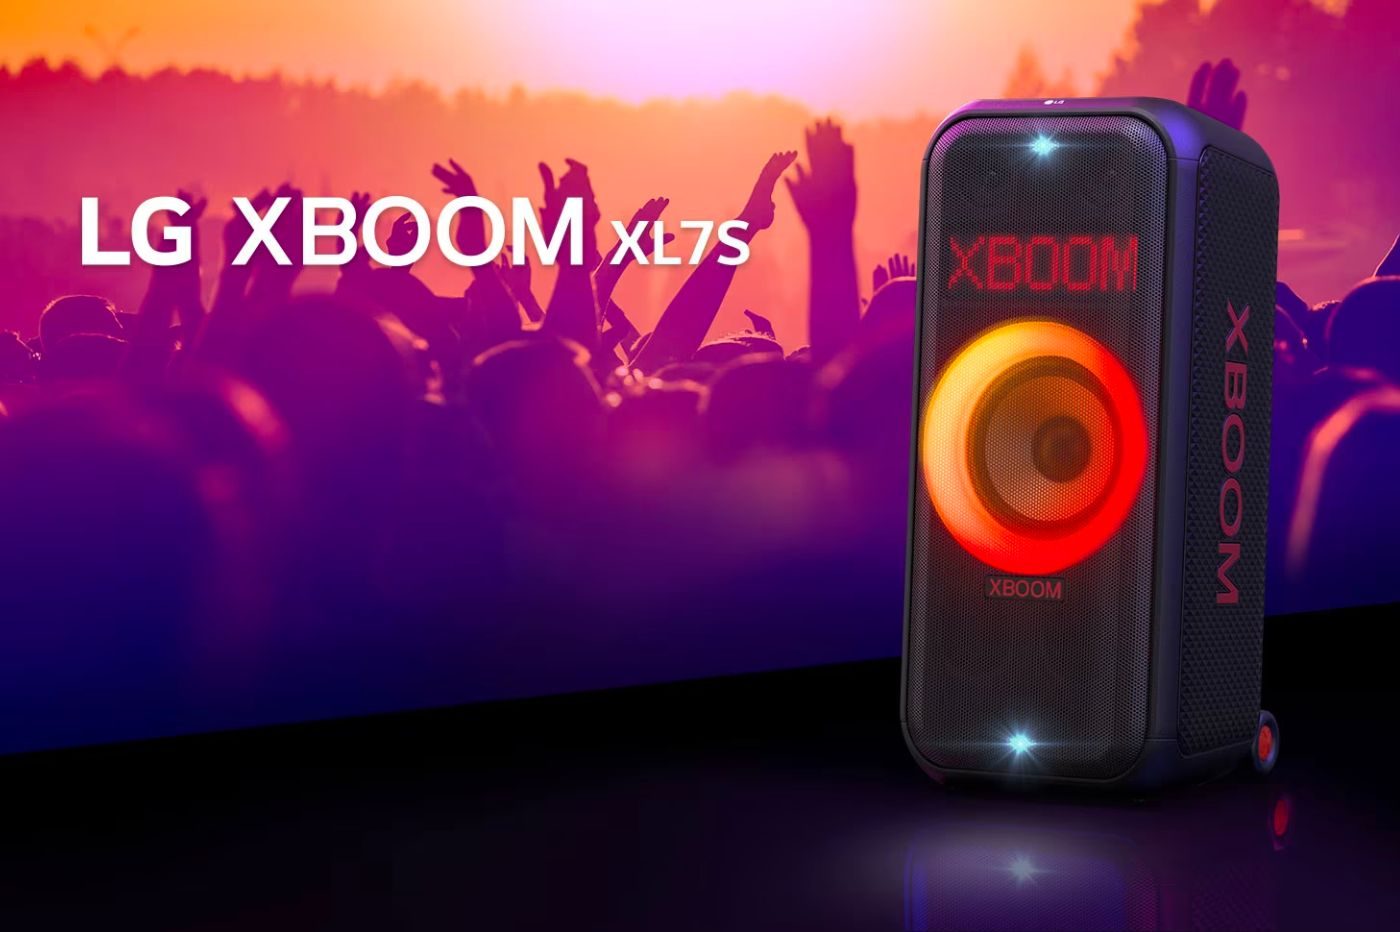 X-Boom XL7S LG 